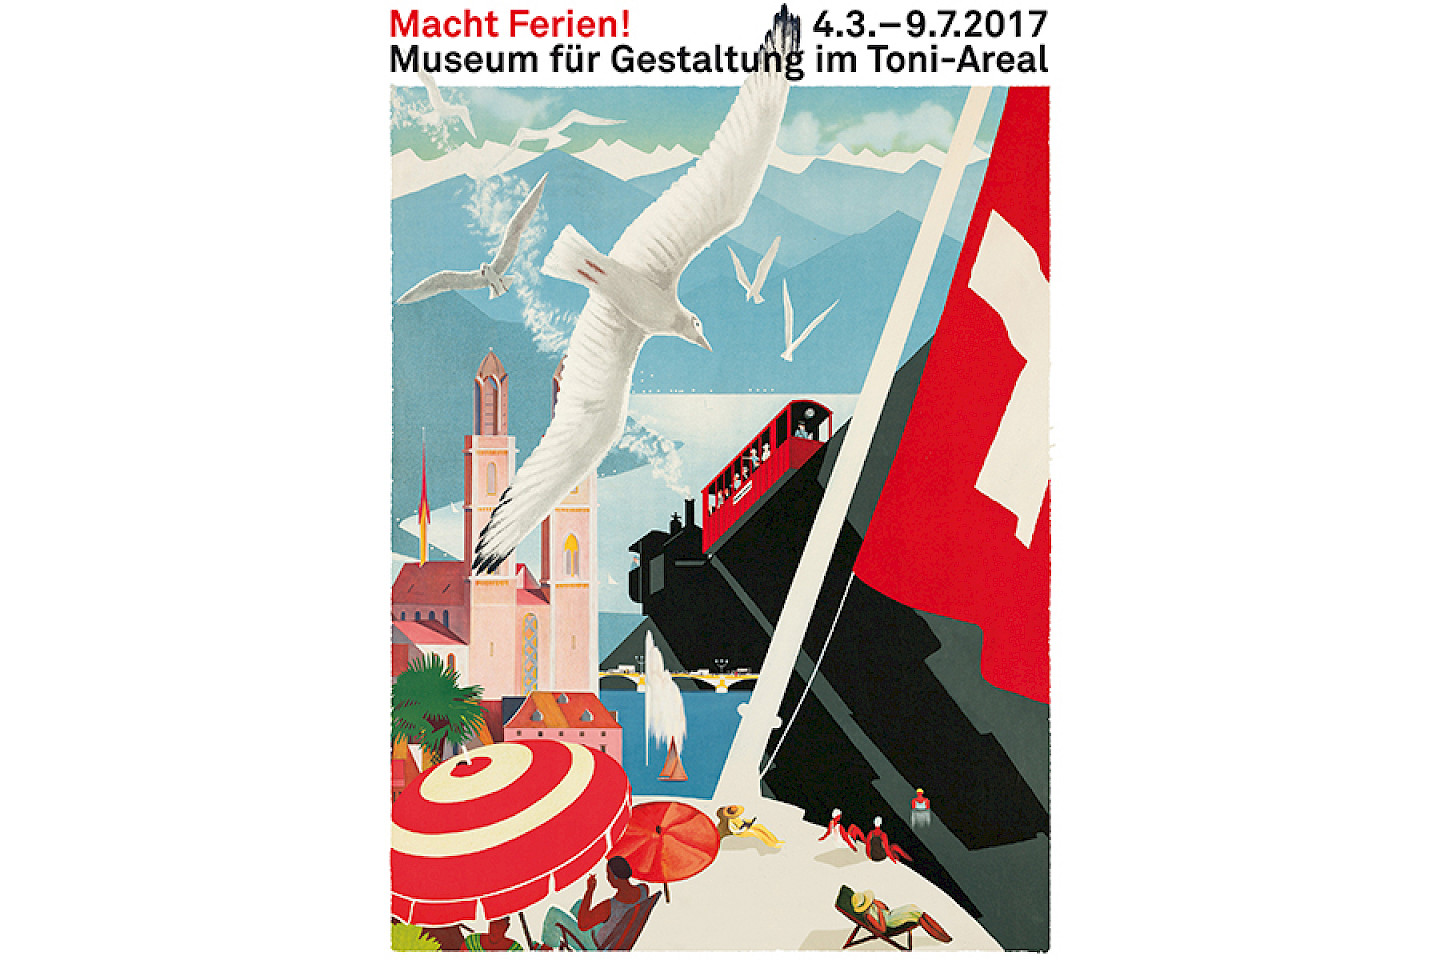 22	Buffet für Gestaltung, „Macht Ferien!“, Ausstellungsplakat, 2017, Museum für Gestaltung, © Buffet für Gestaltung, Zürich